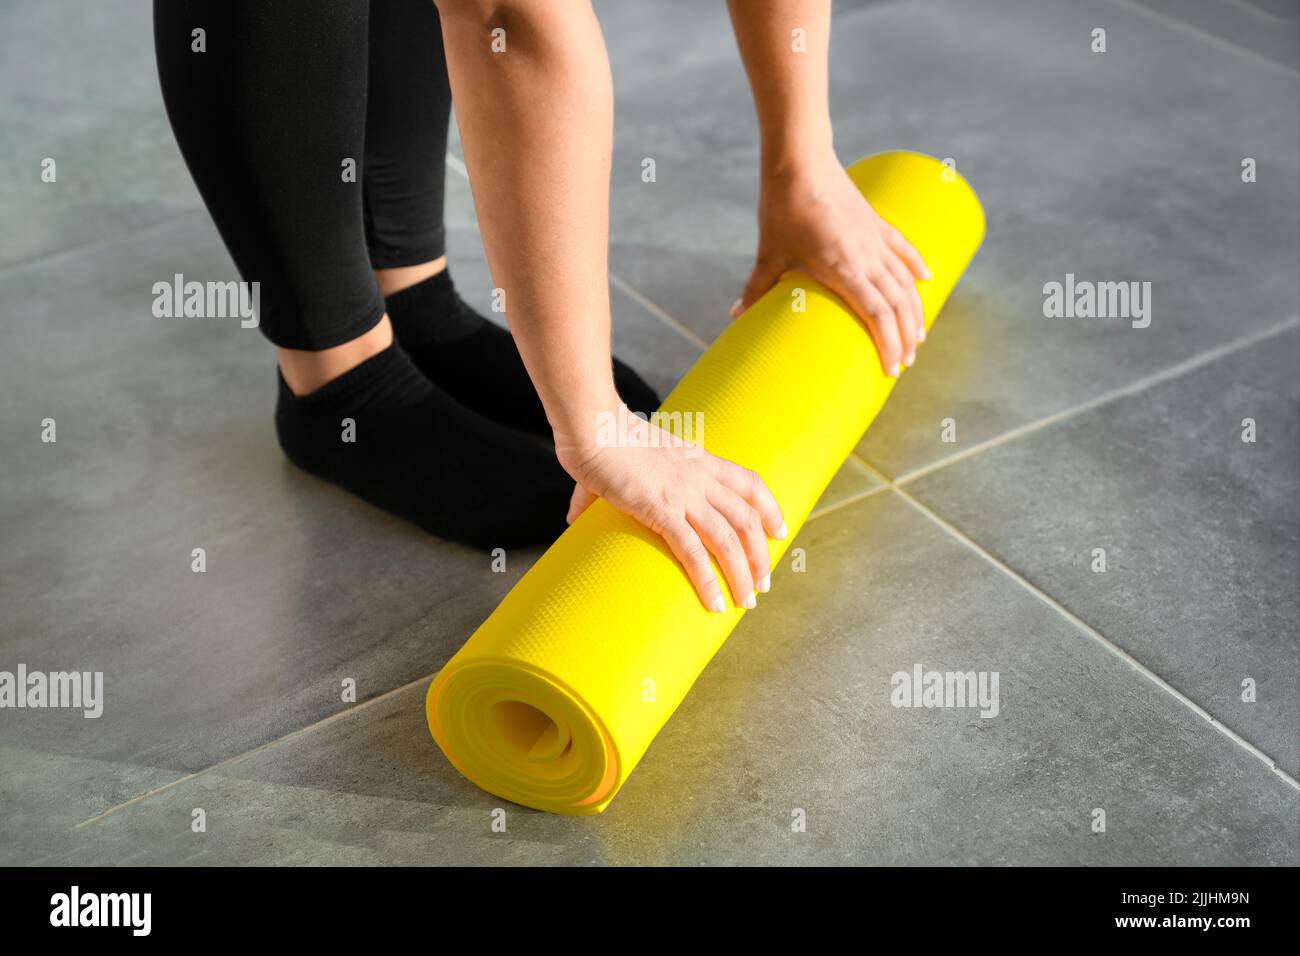 Mädchen bereitet sich darauf vor, die gelbe Rolle der Sportmatte für die Fitness auszupacken. Die Hände liegen aus nächster Nähe auf der Matte. Konzept eines gesunden Lebensstils. Stockfoto